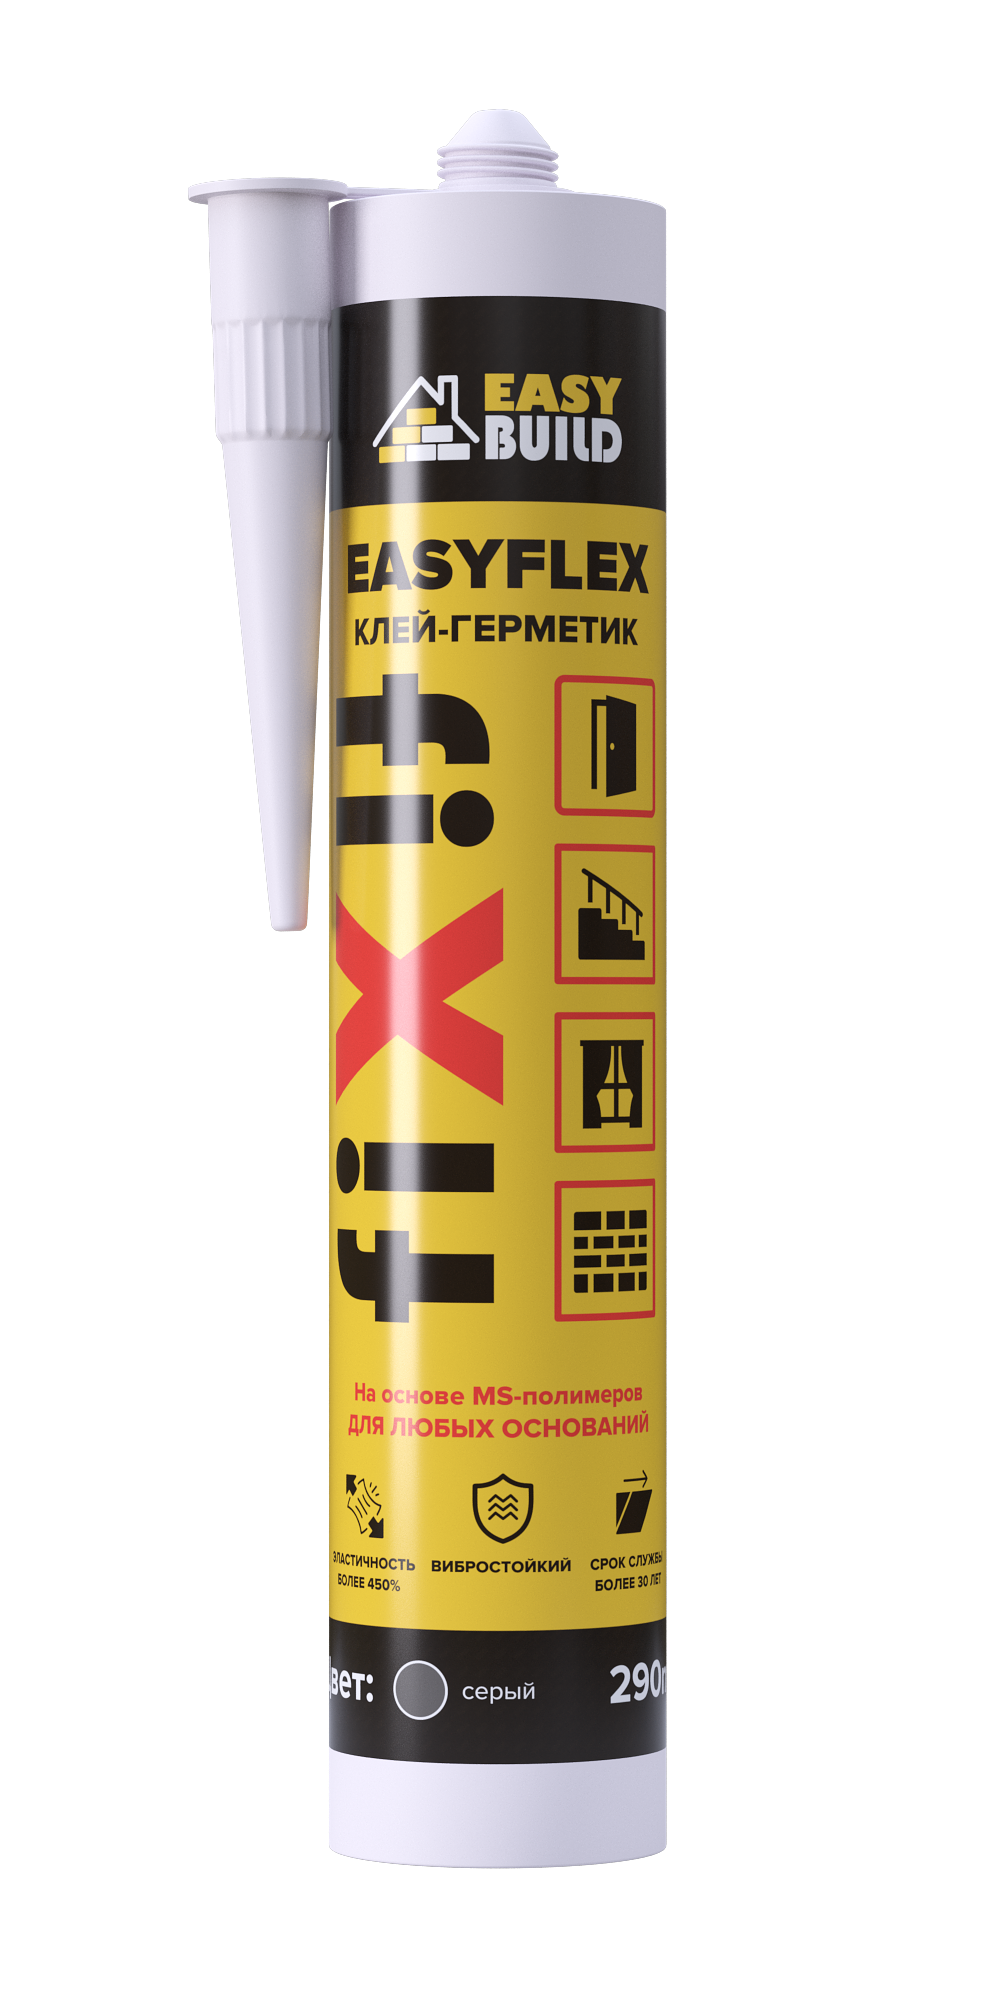 Клей-герметик мультифункциональный Easyflex Fix серый клей герметик yoldas np1 elastic на основе ms полимера 600 мл cерый